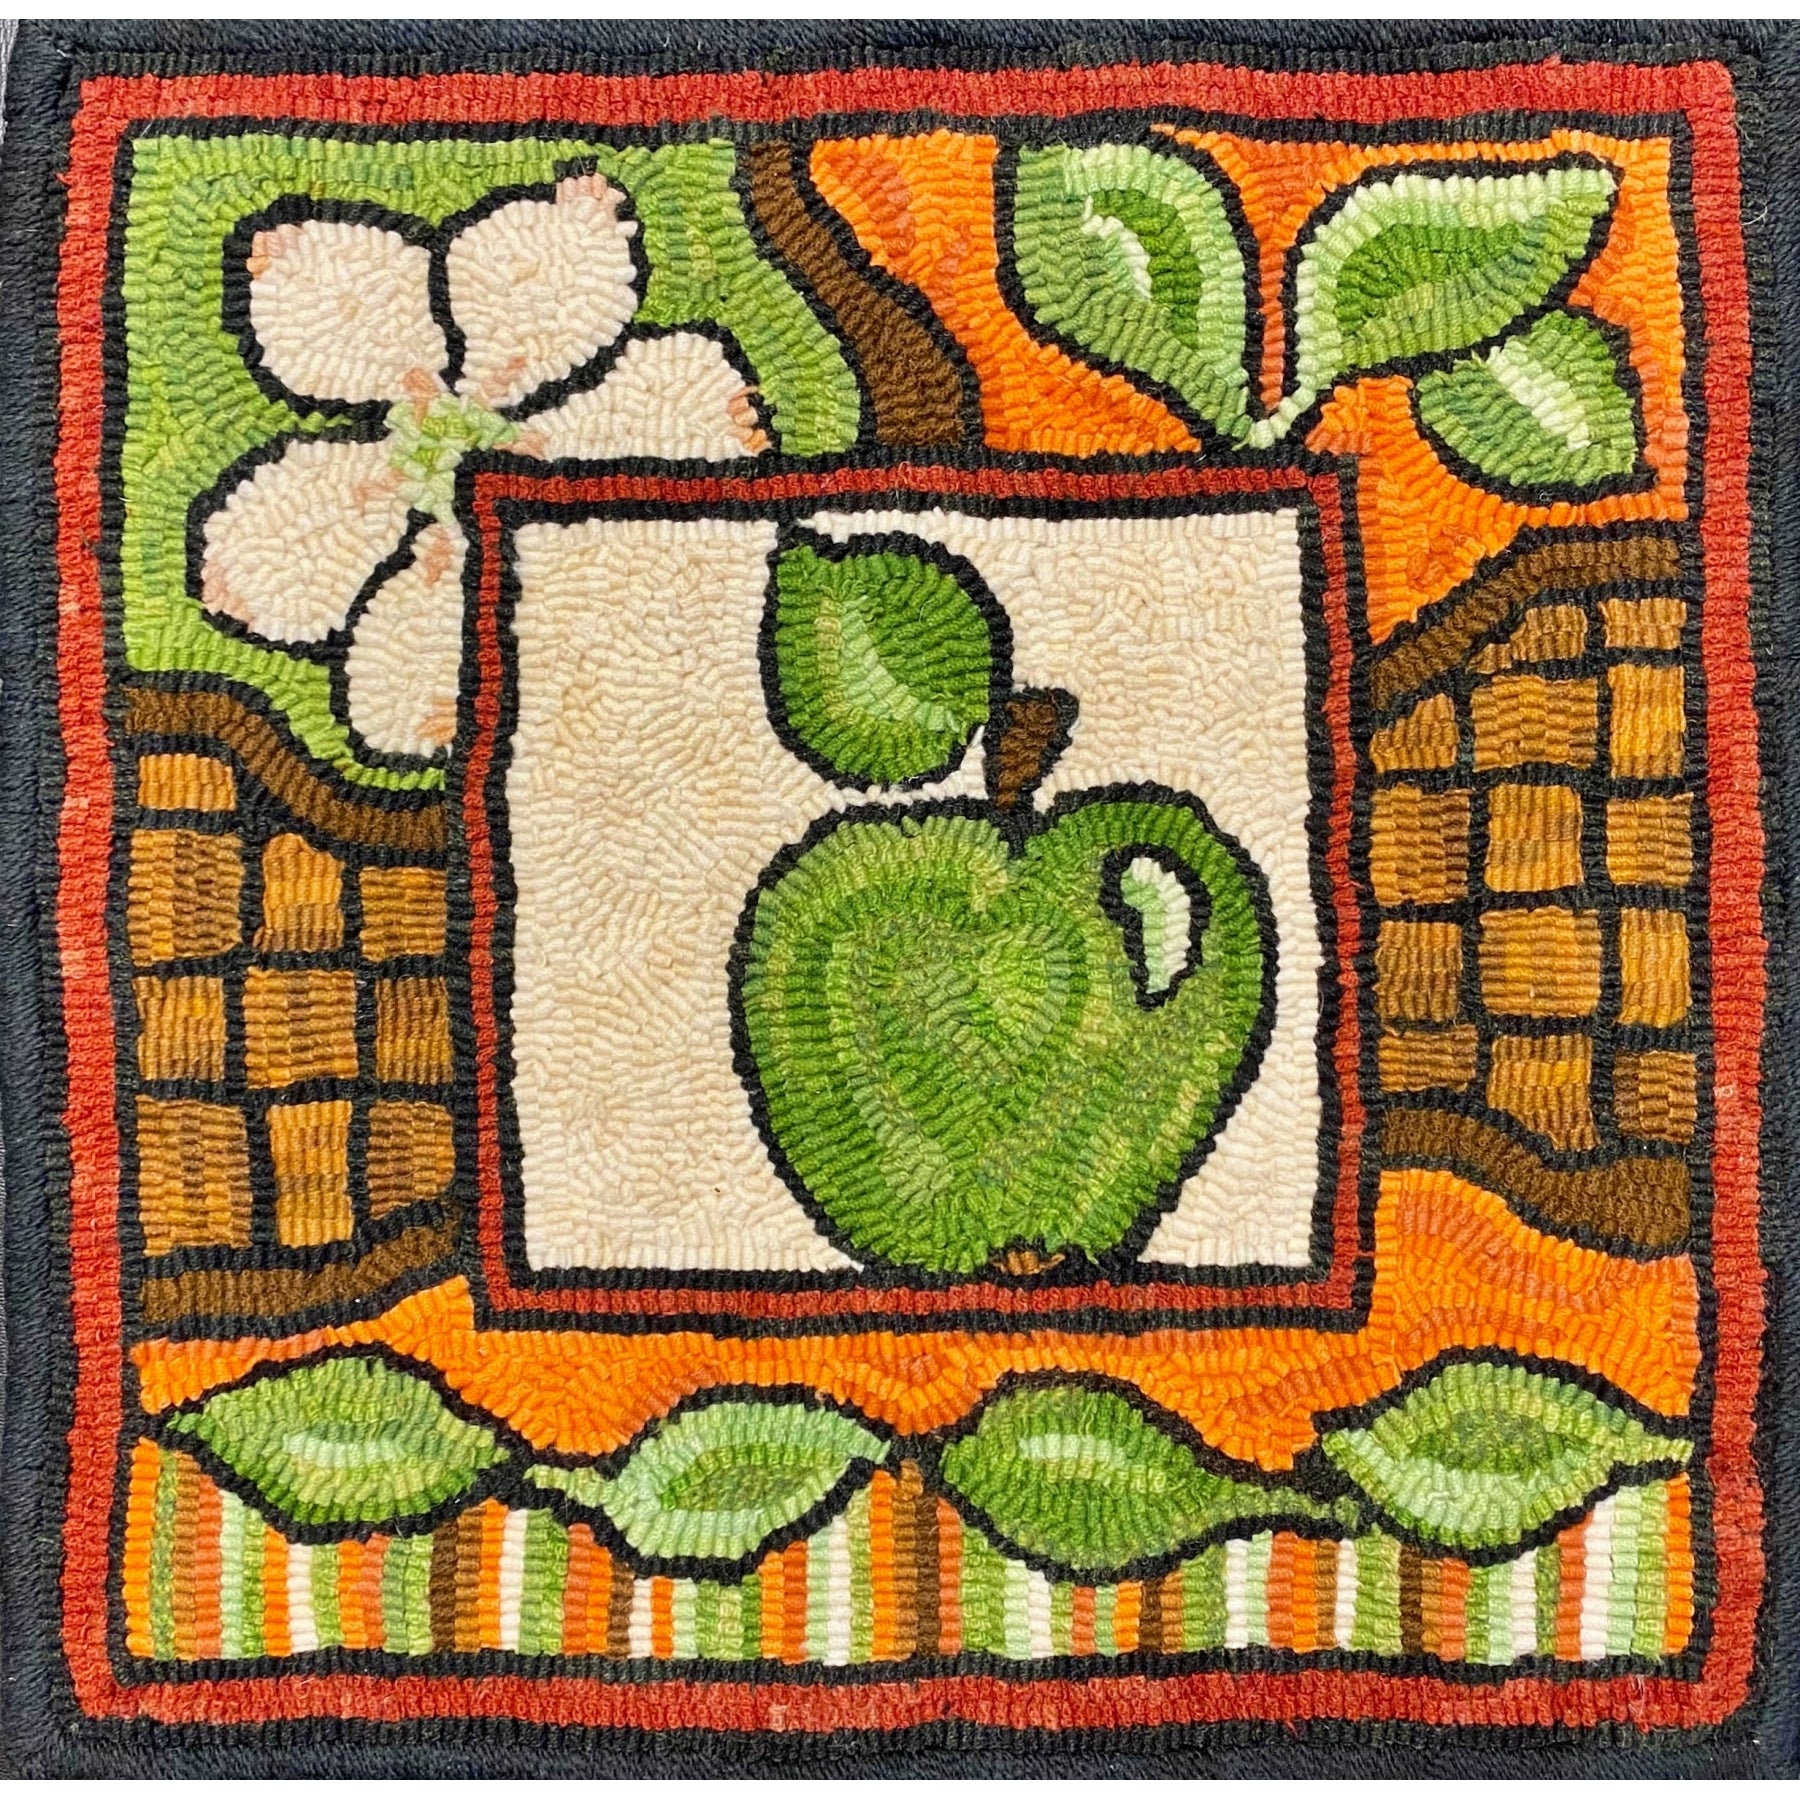 Apple Basket, rug hooked by Linda Powell